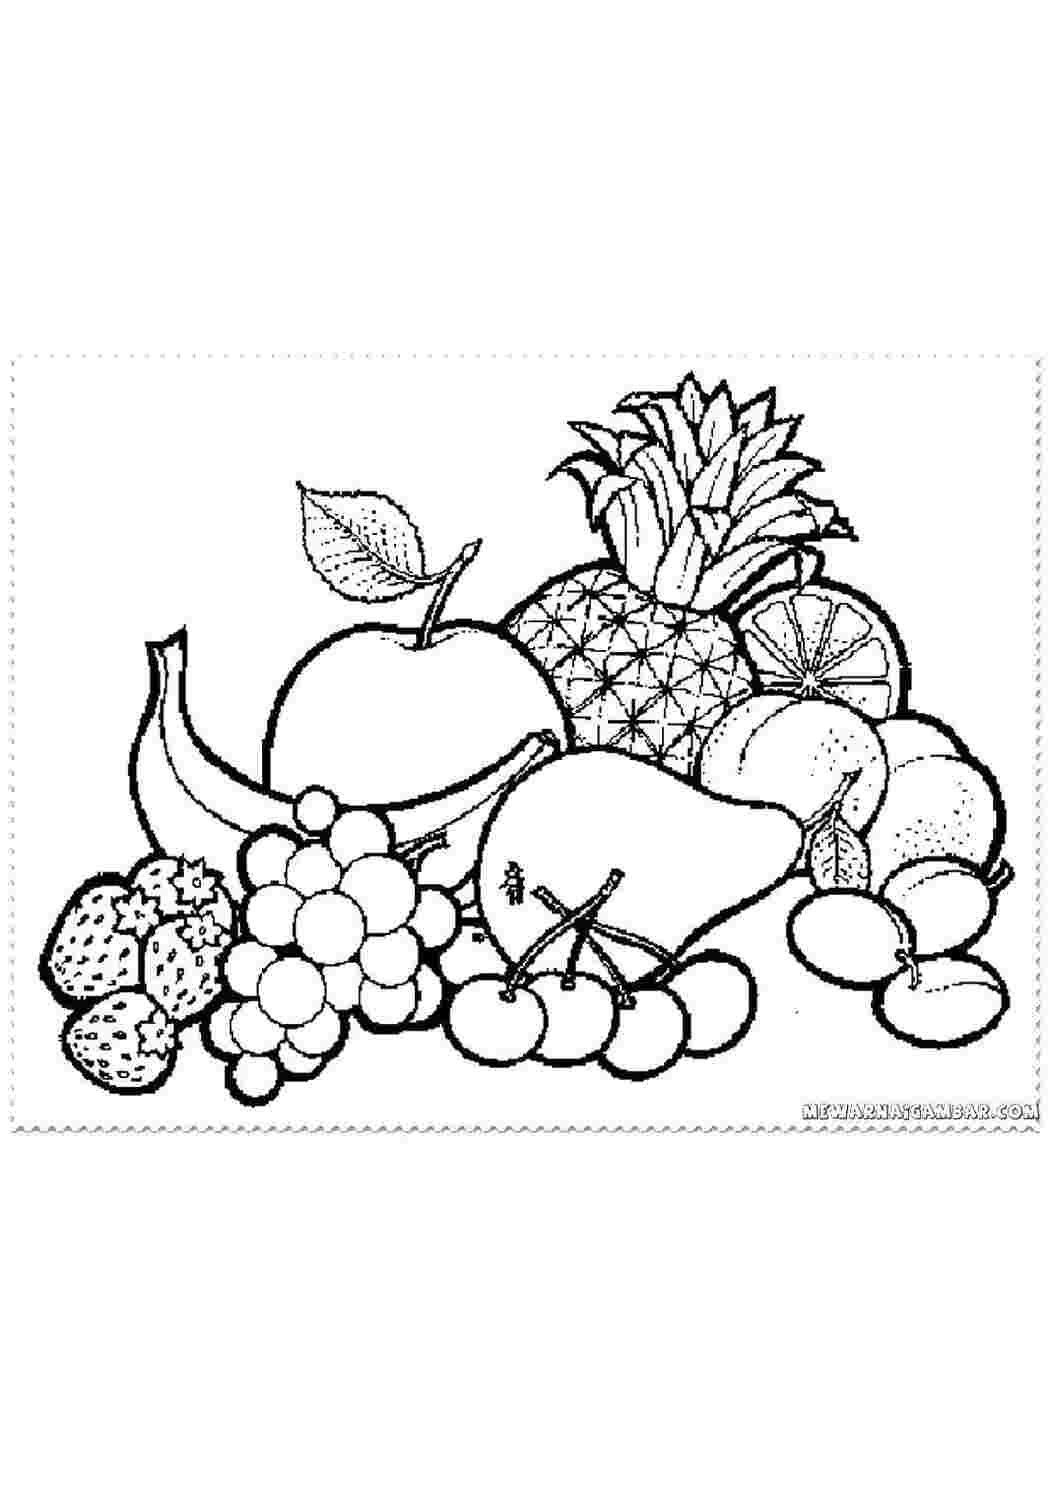 Раскраски Раскраски ягоды малина вишня арбуз вишня крыжовник  Фрукты и ягоды.